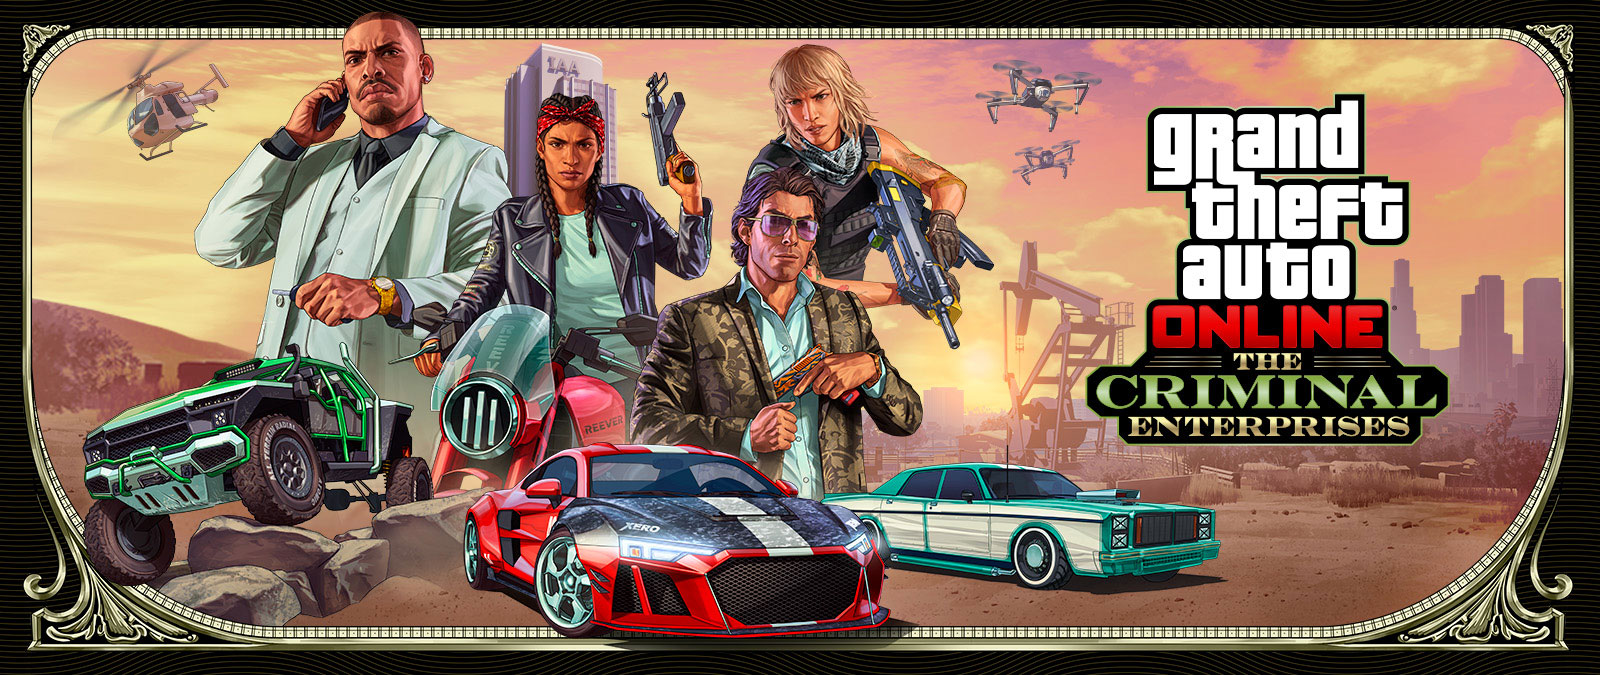 Grand Theft Auto Online: The Criminal Enterprises, Drei stylische Fahrzeuge rasen durch den Vordergrund, während vier Charaktere oberhalb posieren.